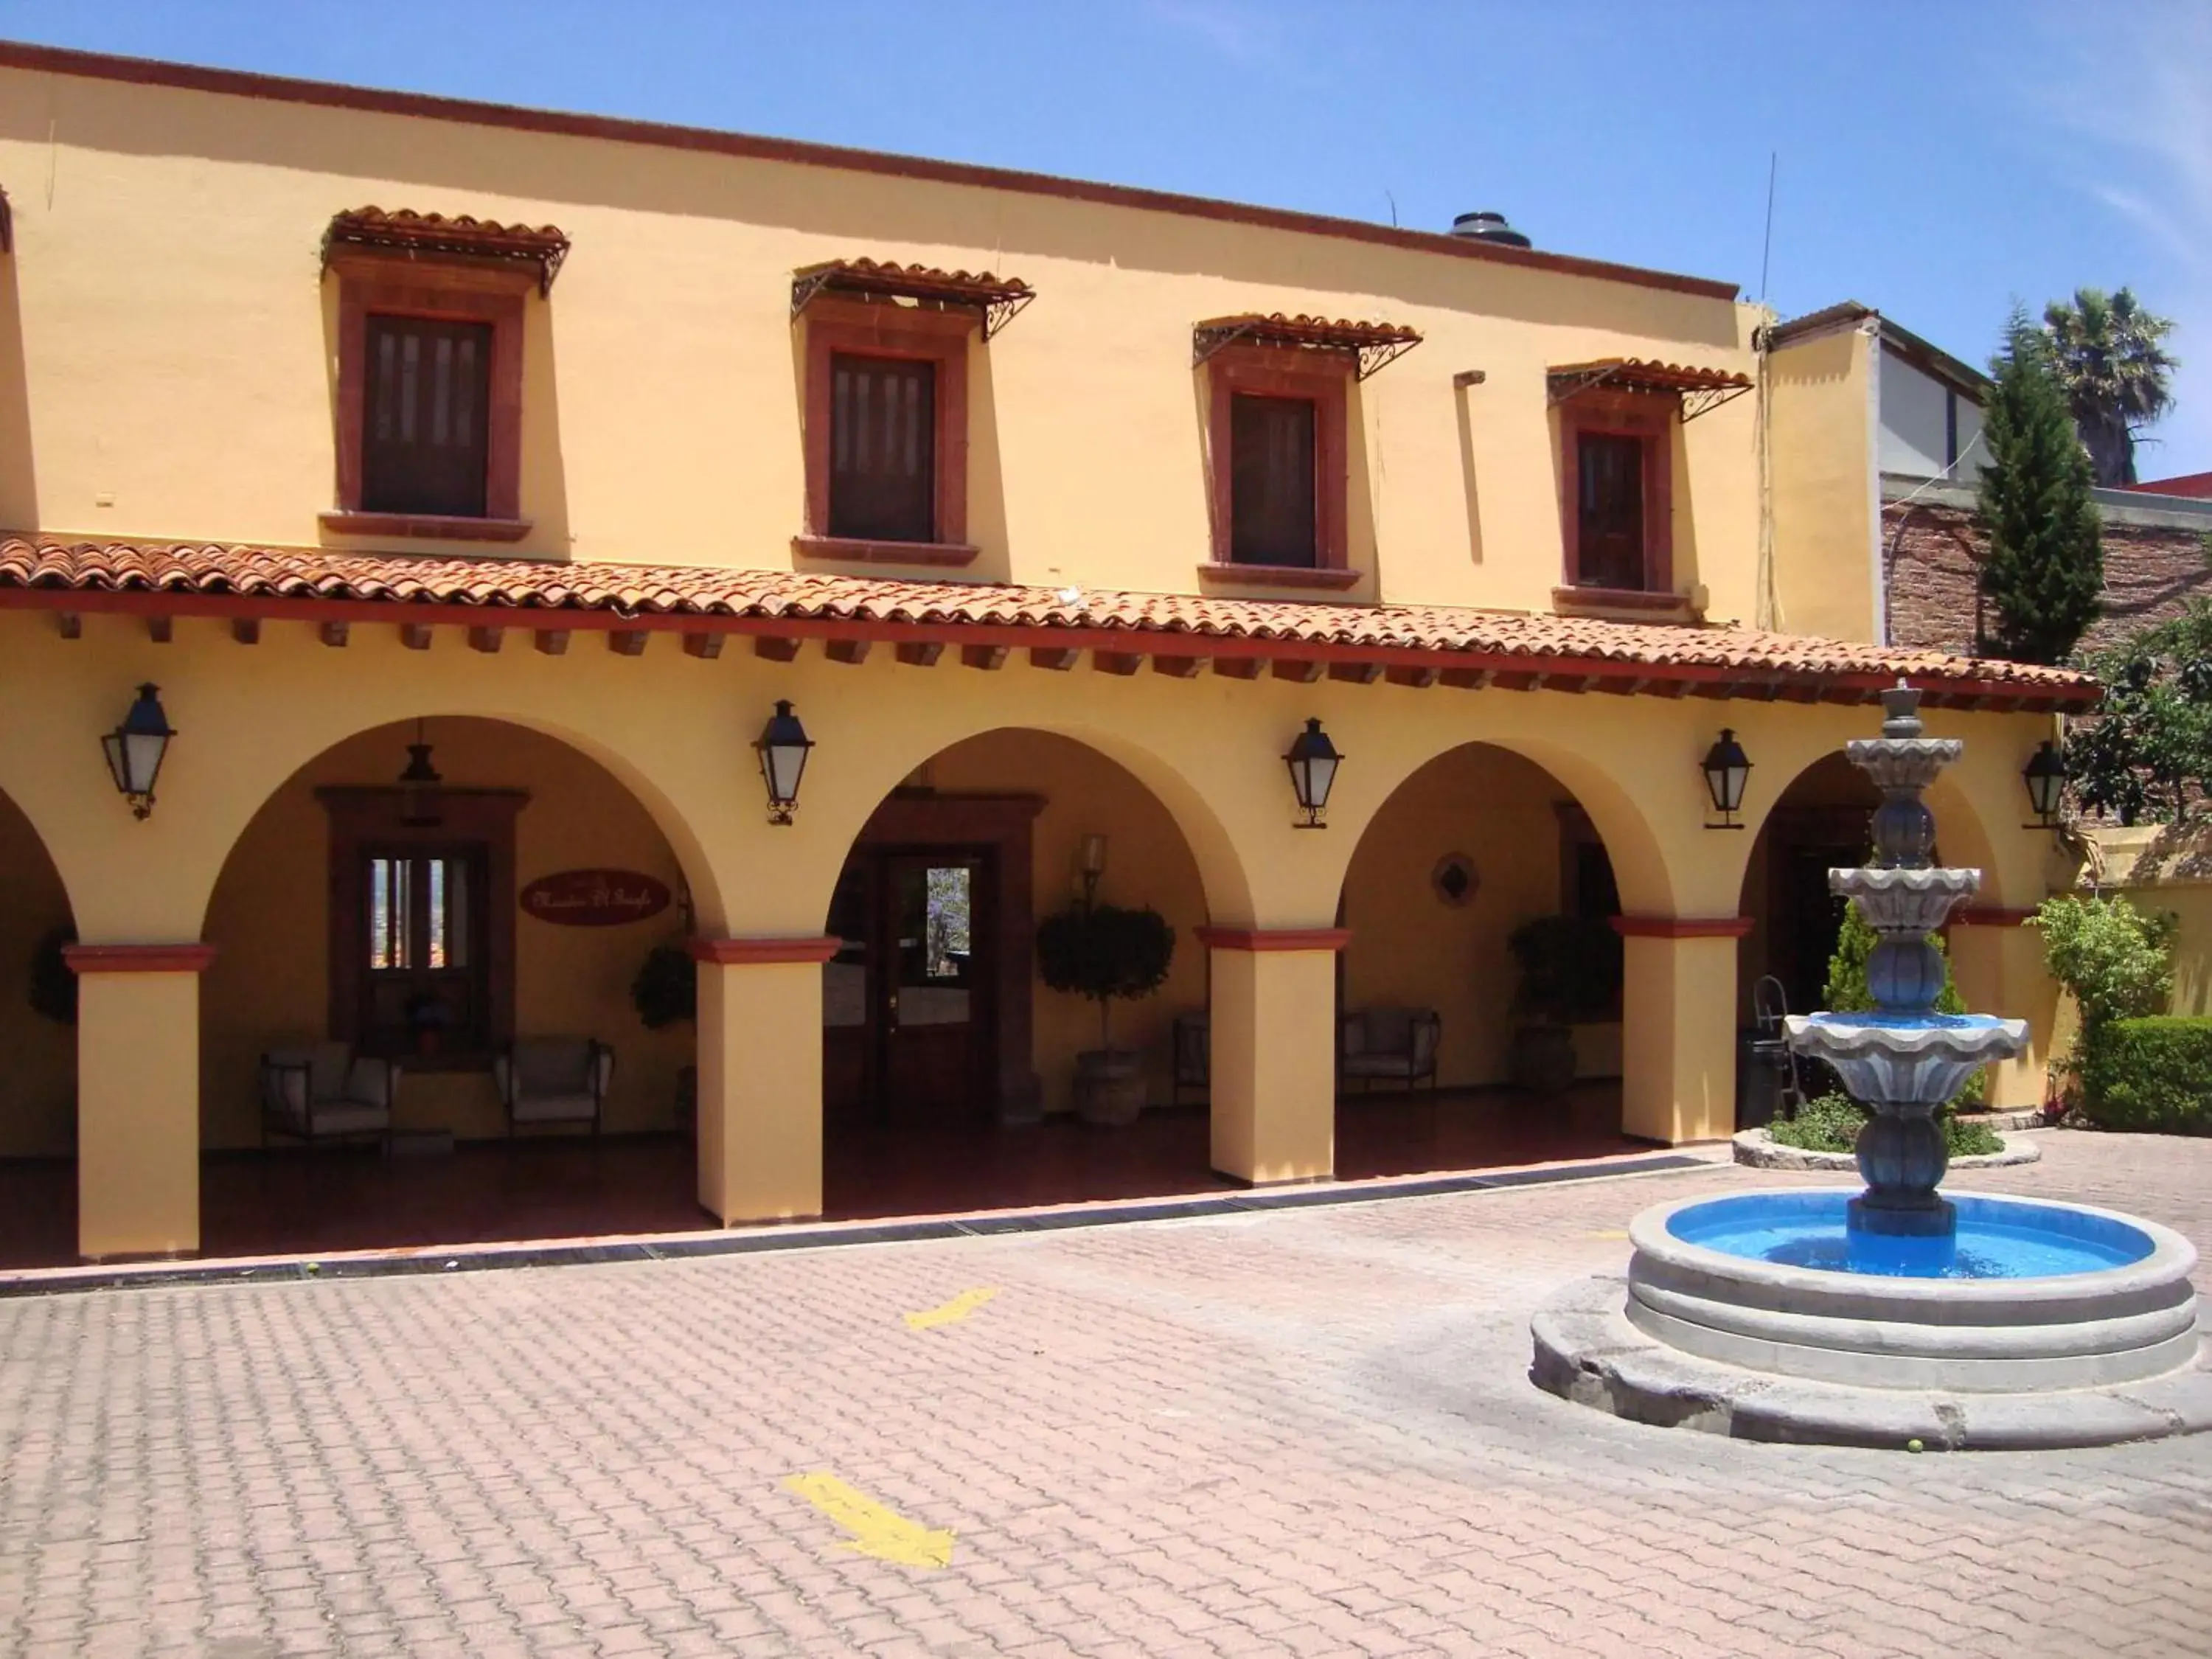 Property Building in Mirador del Frayle